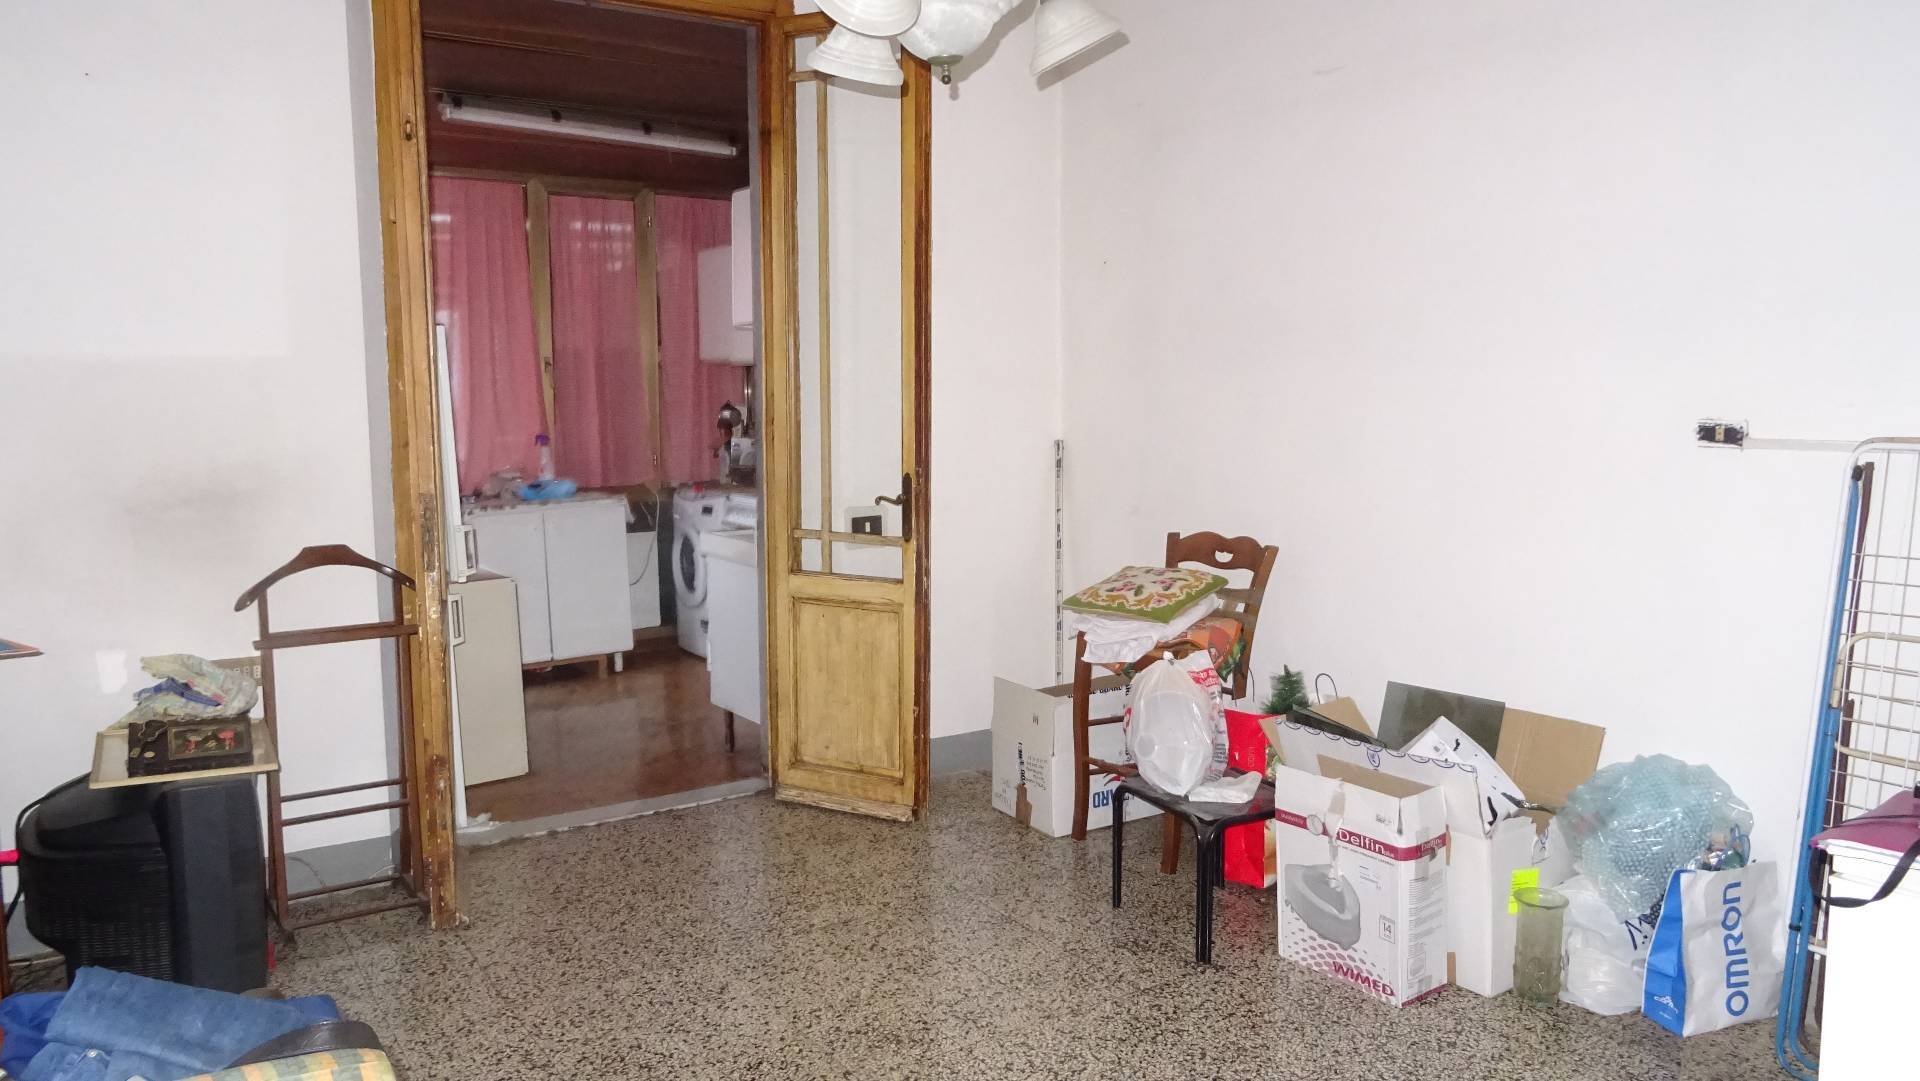 Appartamento in vendita a Montespertoli, 3 locali, prezzo € 120.000 | PortaleAgenzieImmobiliari.it